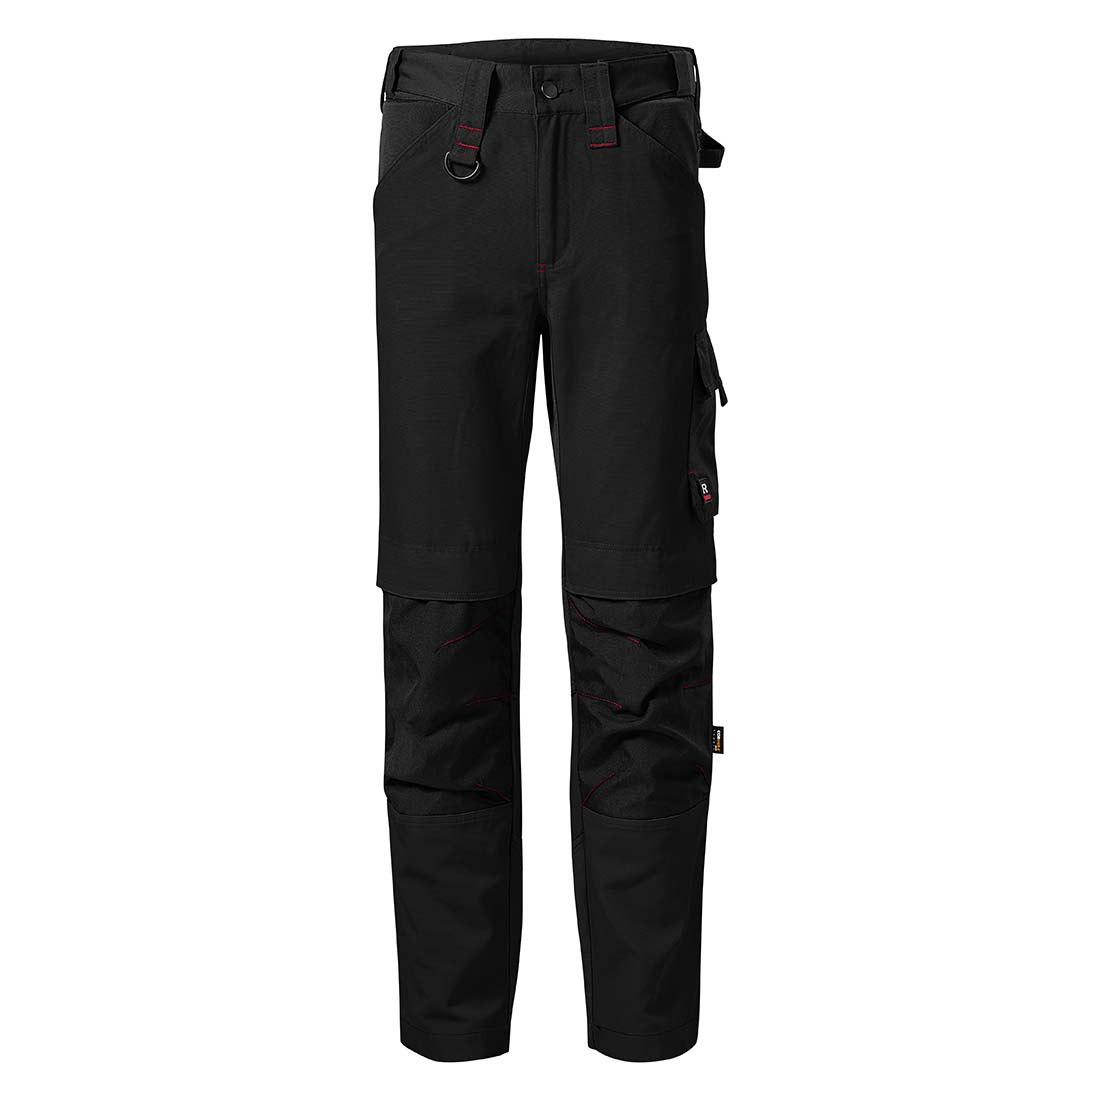 Pantalon de travail VERTEX pour hommes - Les vêtements de protection